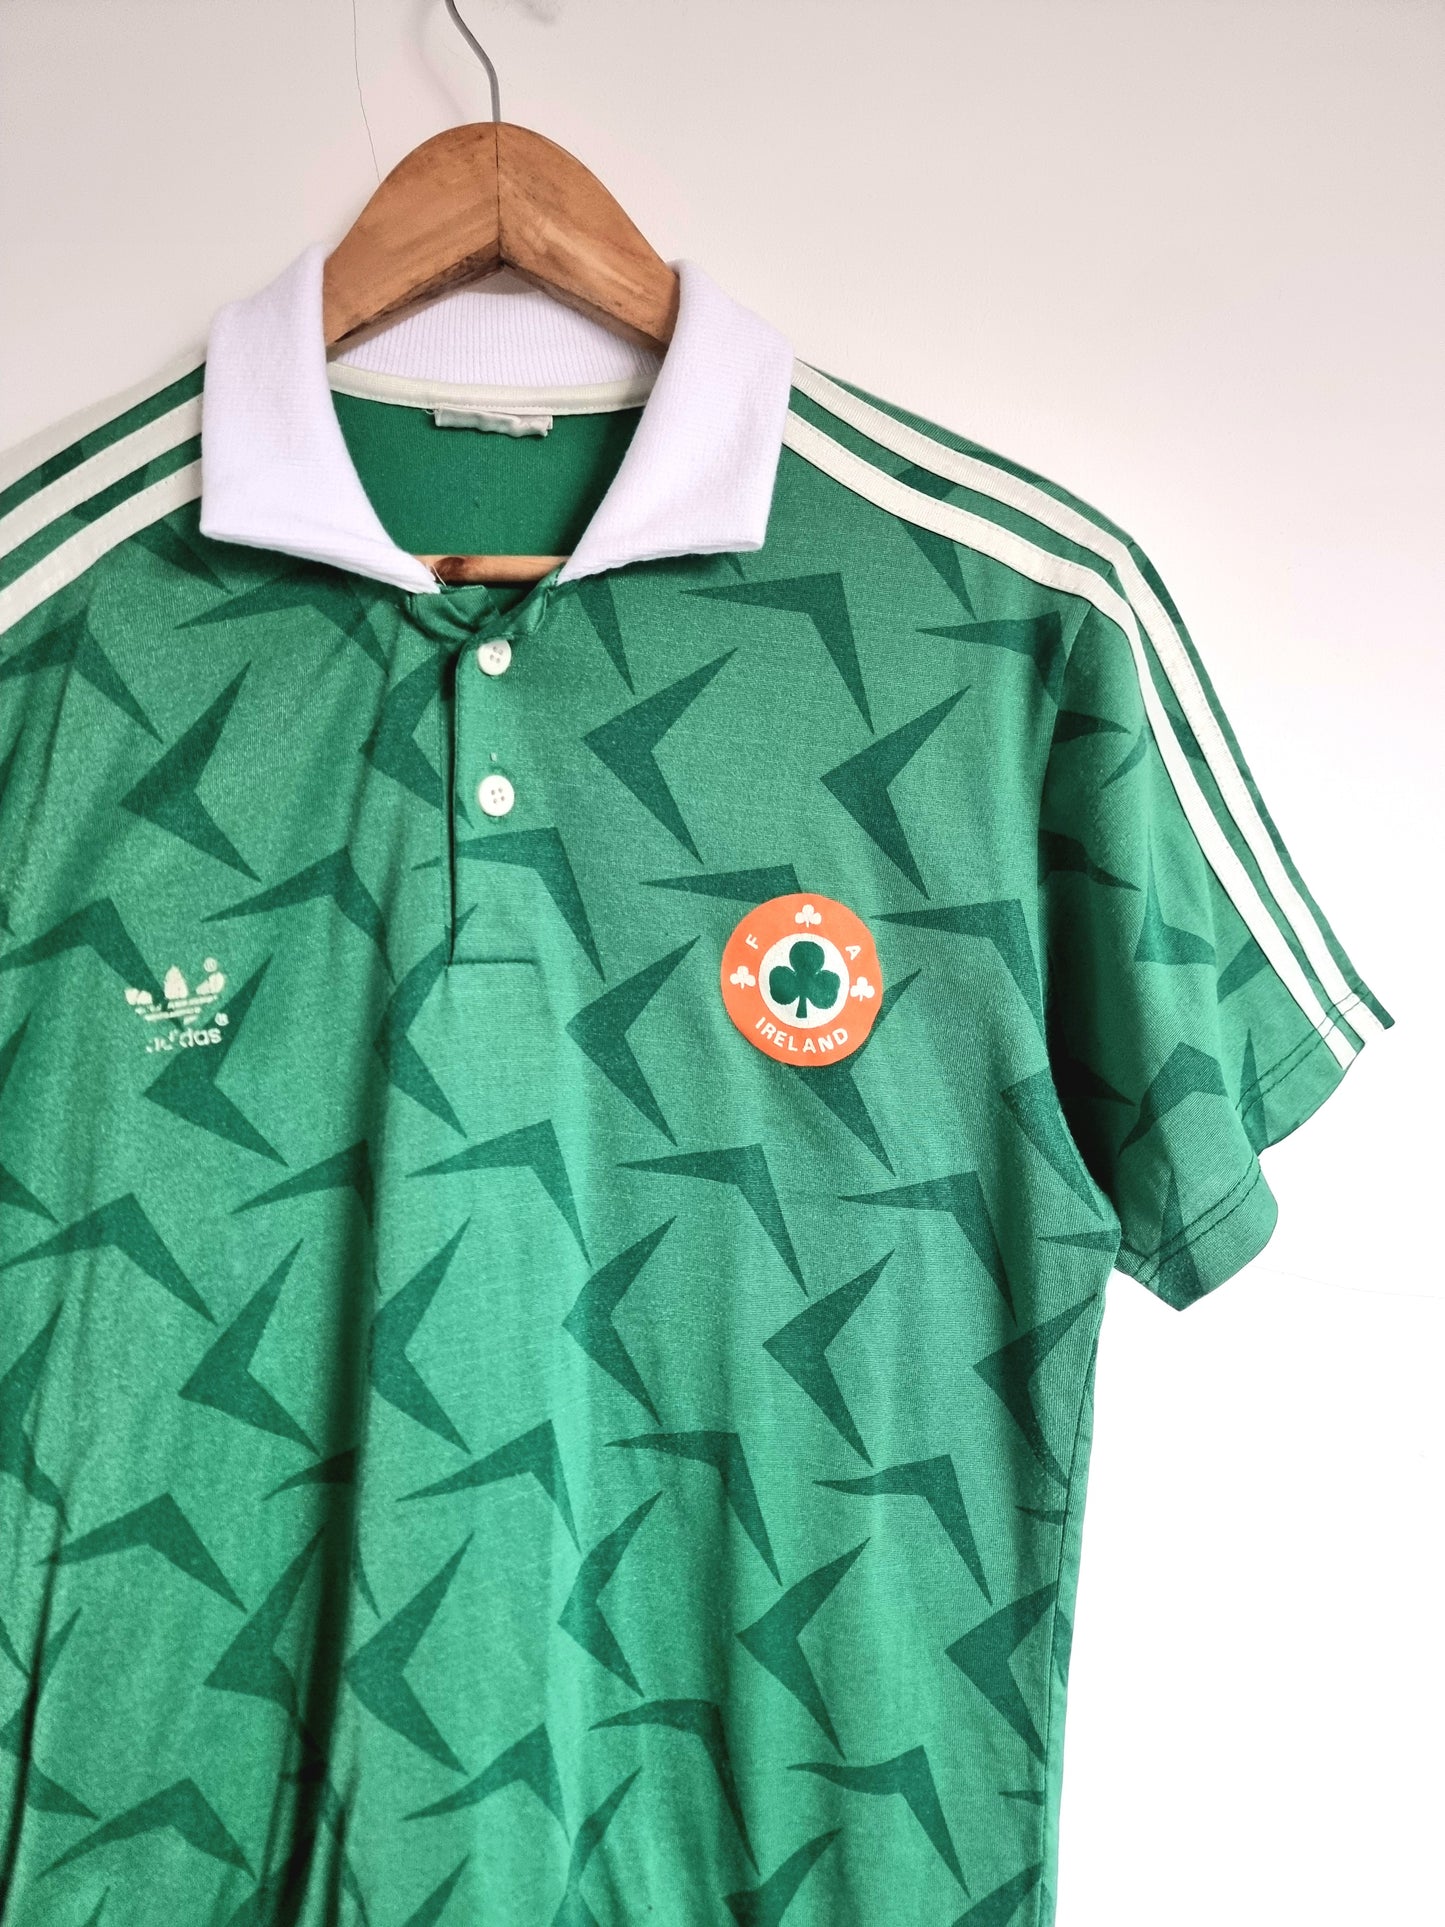 Adidas Ireland 90/92 Home Shirt Large